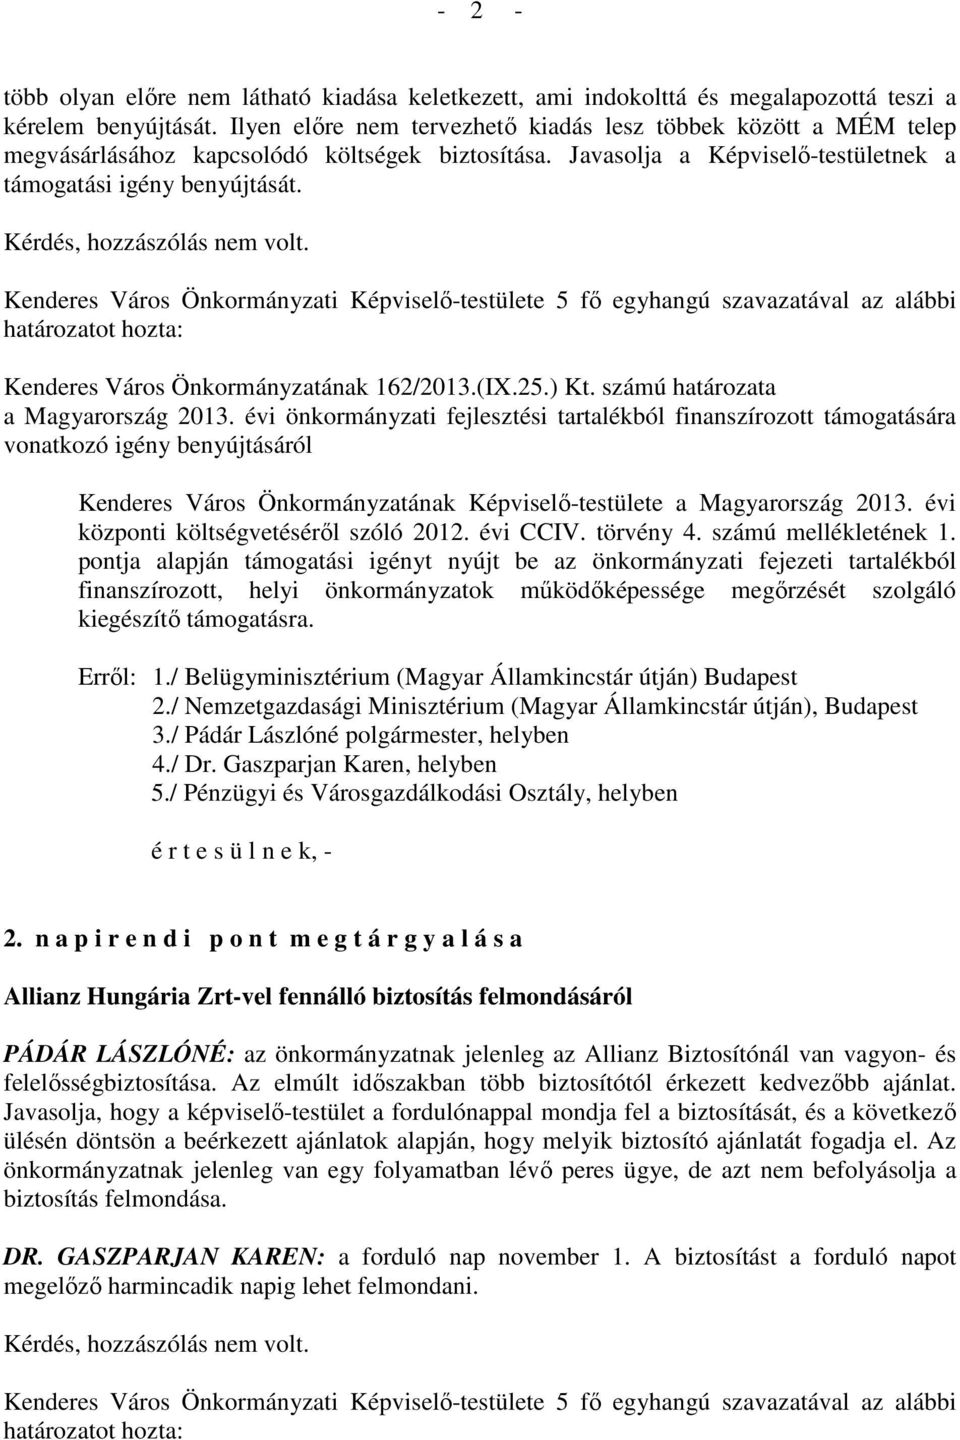 Kérdés, hozzászólás nem volt. Kenderes Város Önkormányzatának 162/2013.(IX.25.) Kt. számú határozata a Magyarország 2013.